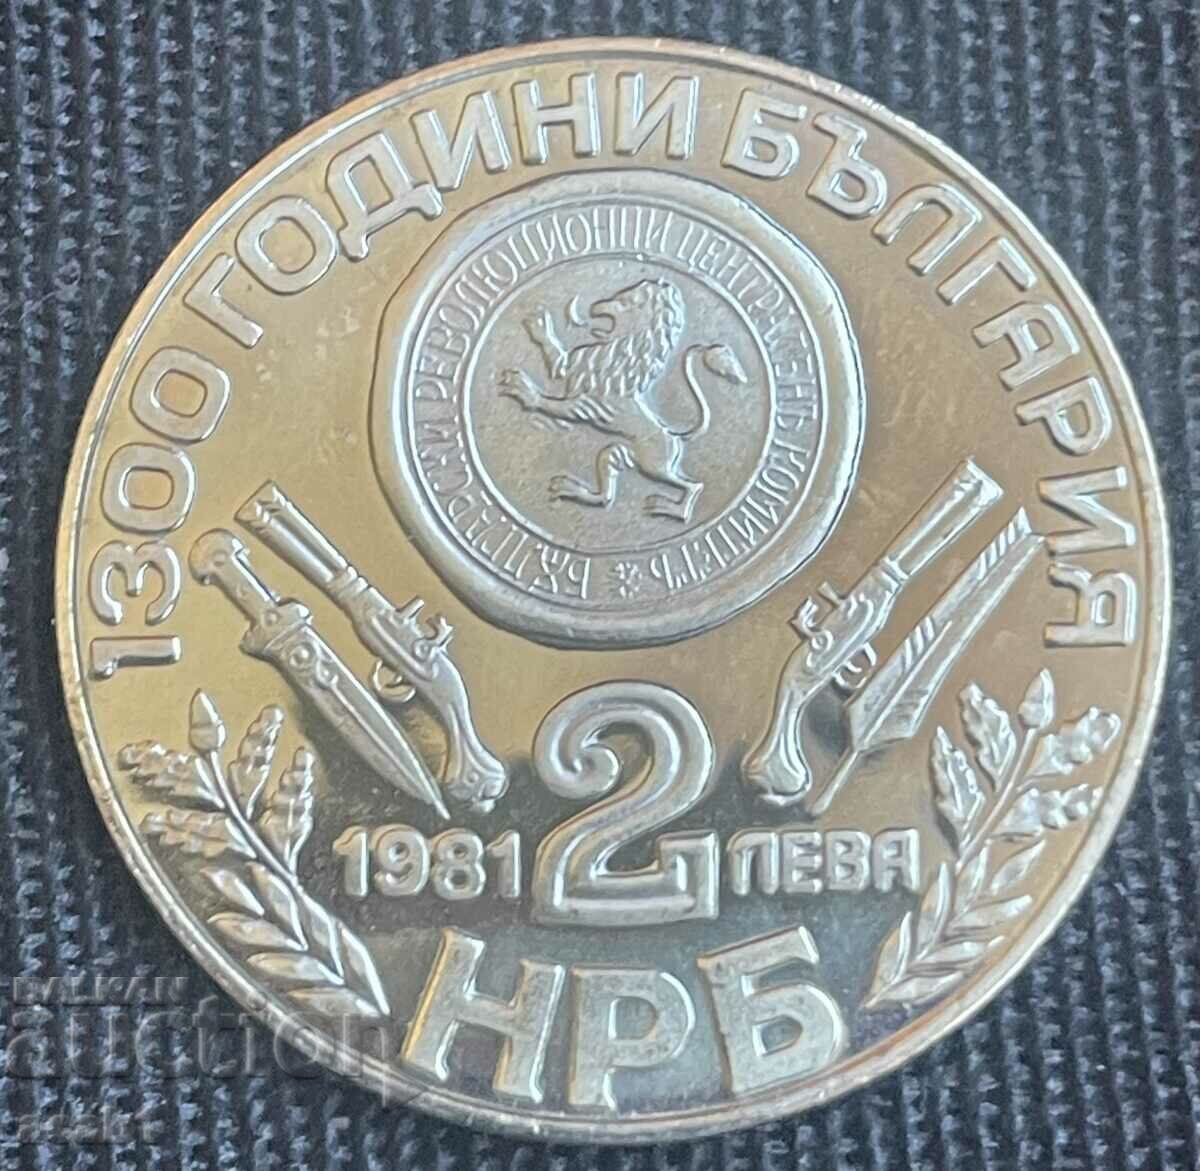 2 лева 1981 - 1300 години България Оборище